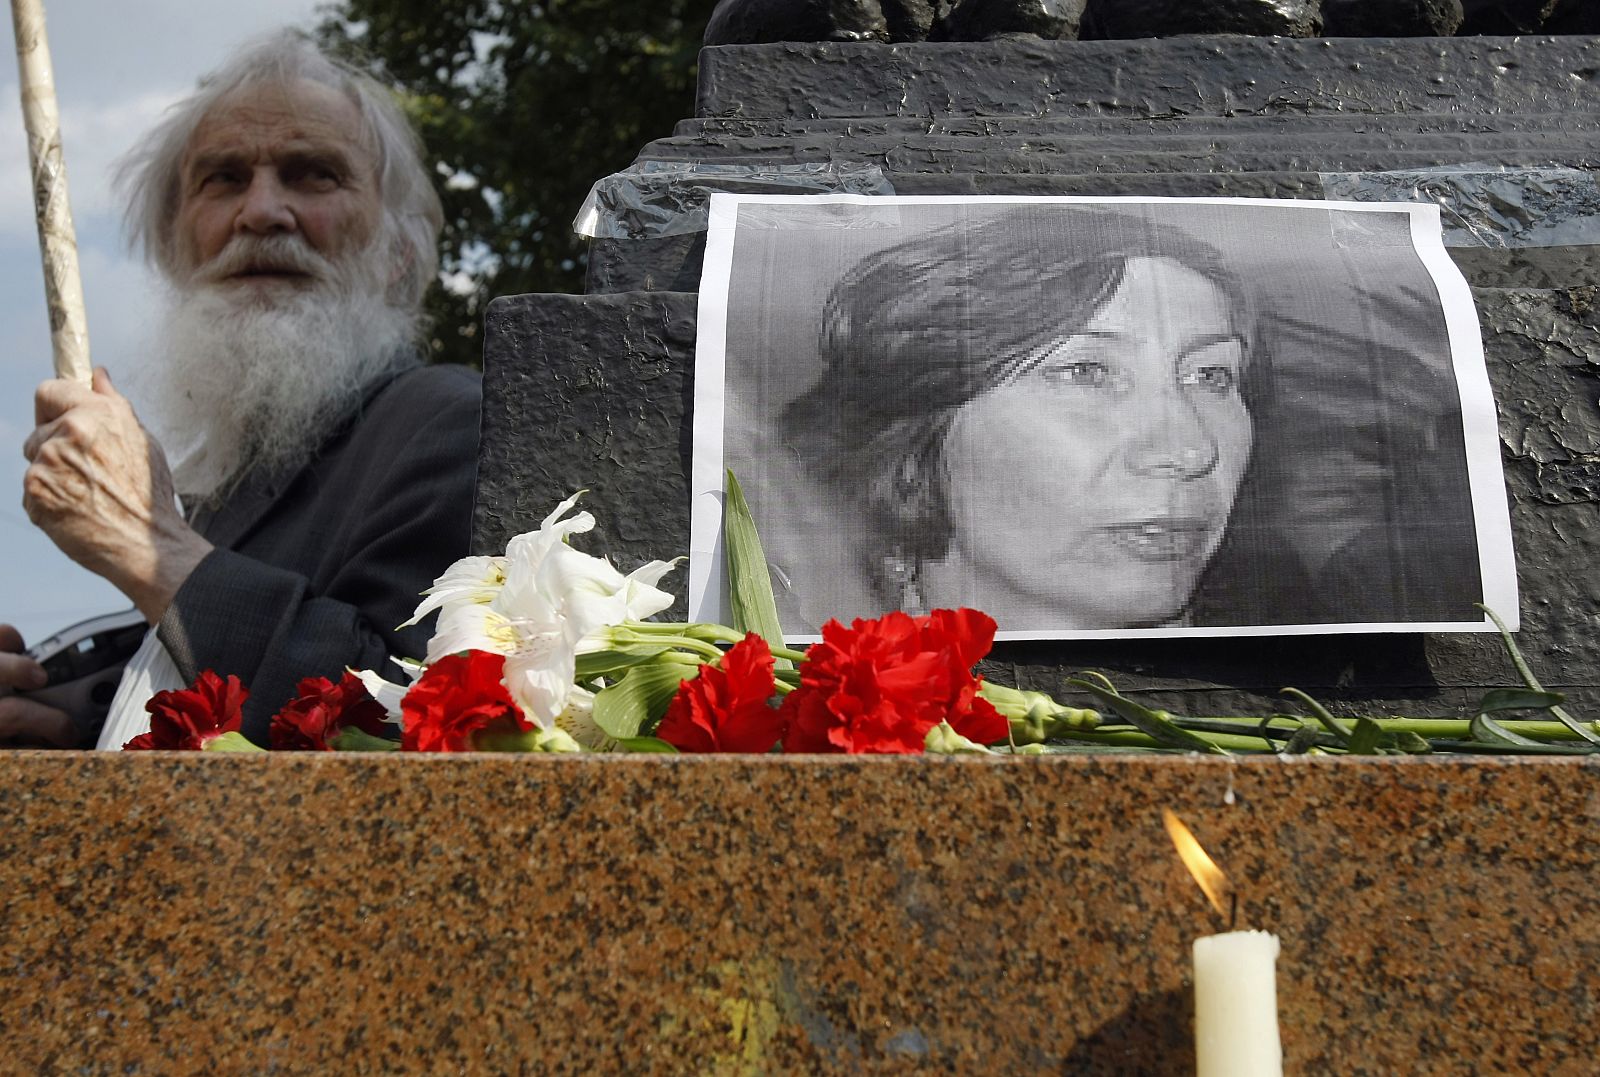 El de Estemirova es el último de una serie de asesinatos de críticos con el régimen.